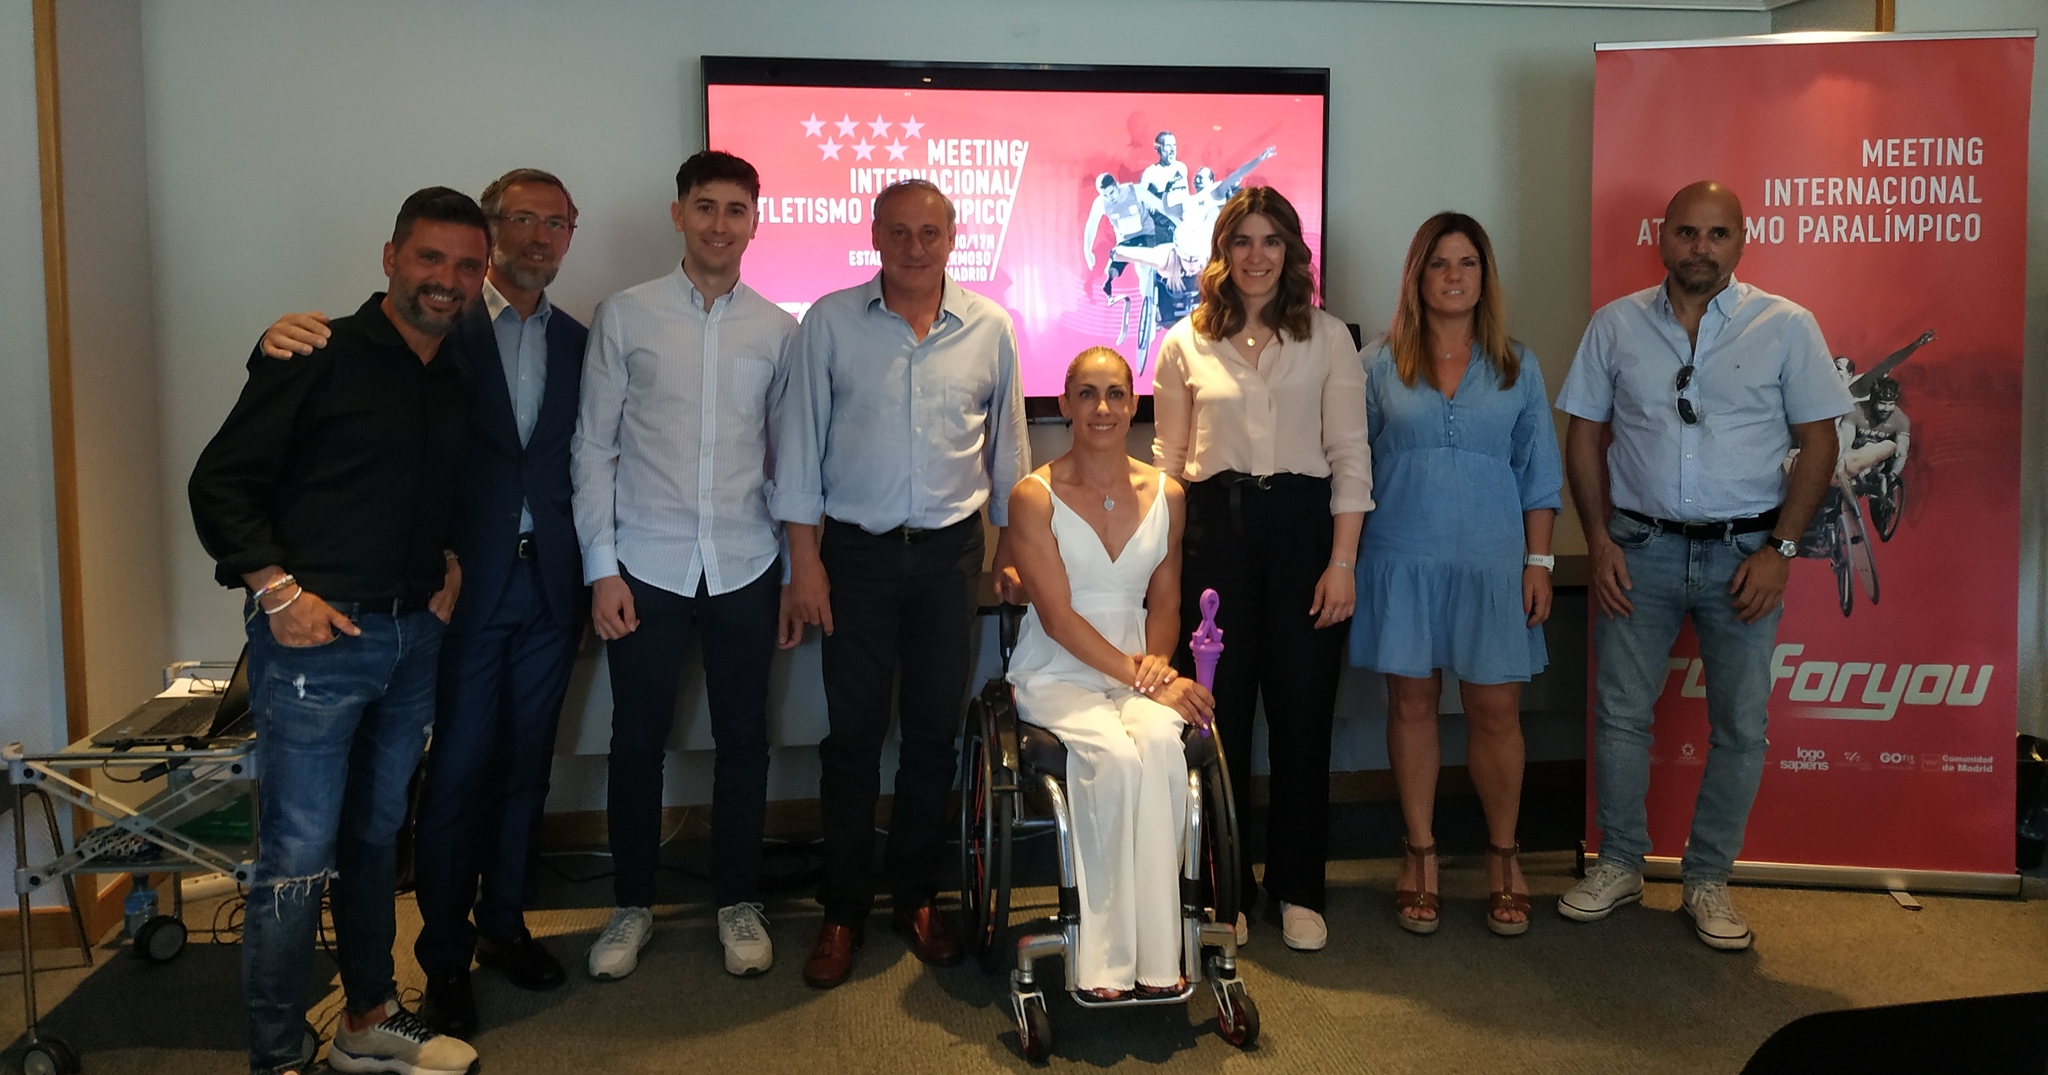 Foto de familia de la presentación del Meeting Internacional de Atletismo Paralímpico /Foto: @elultimorunner